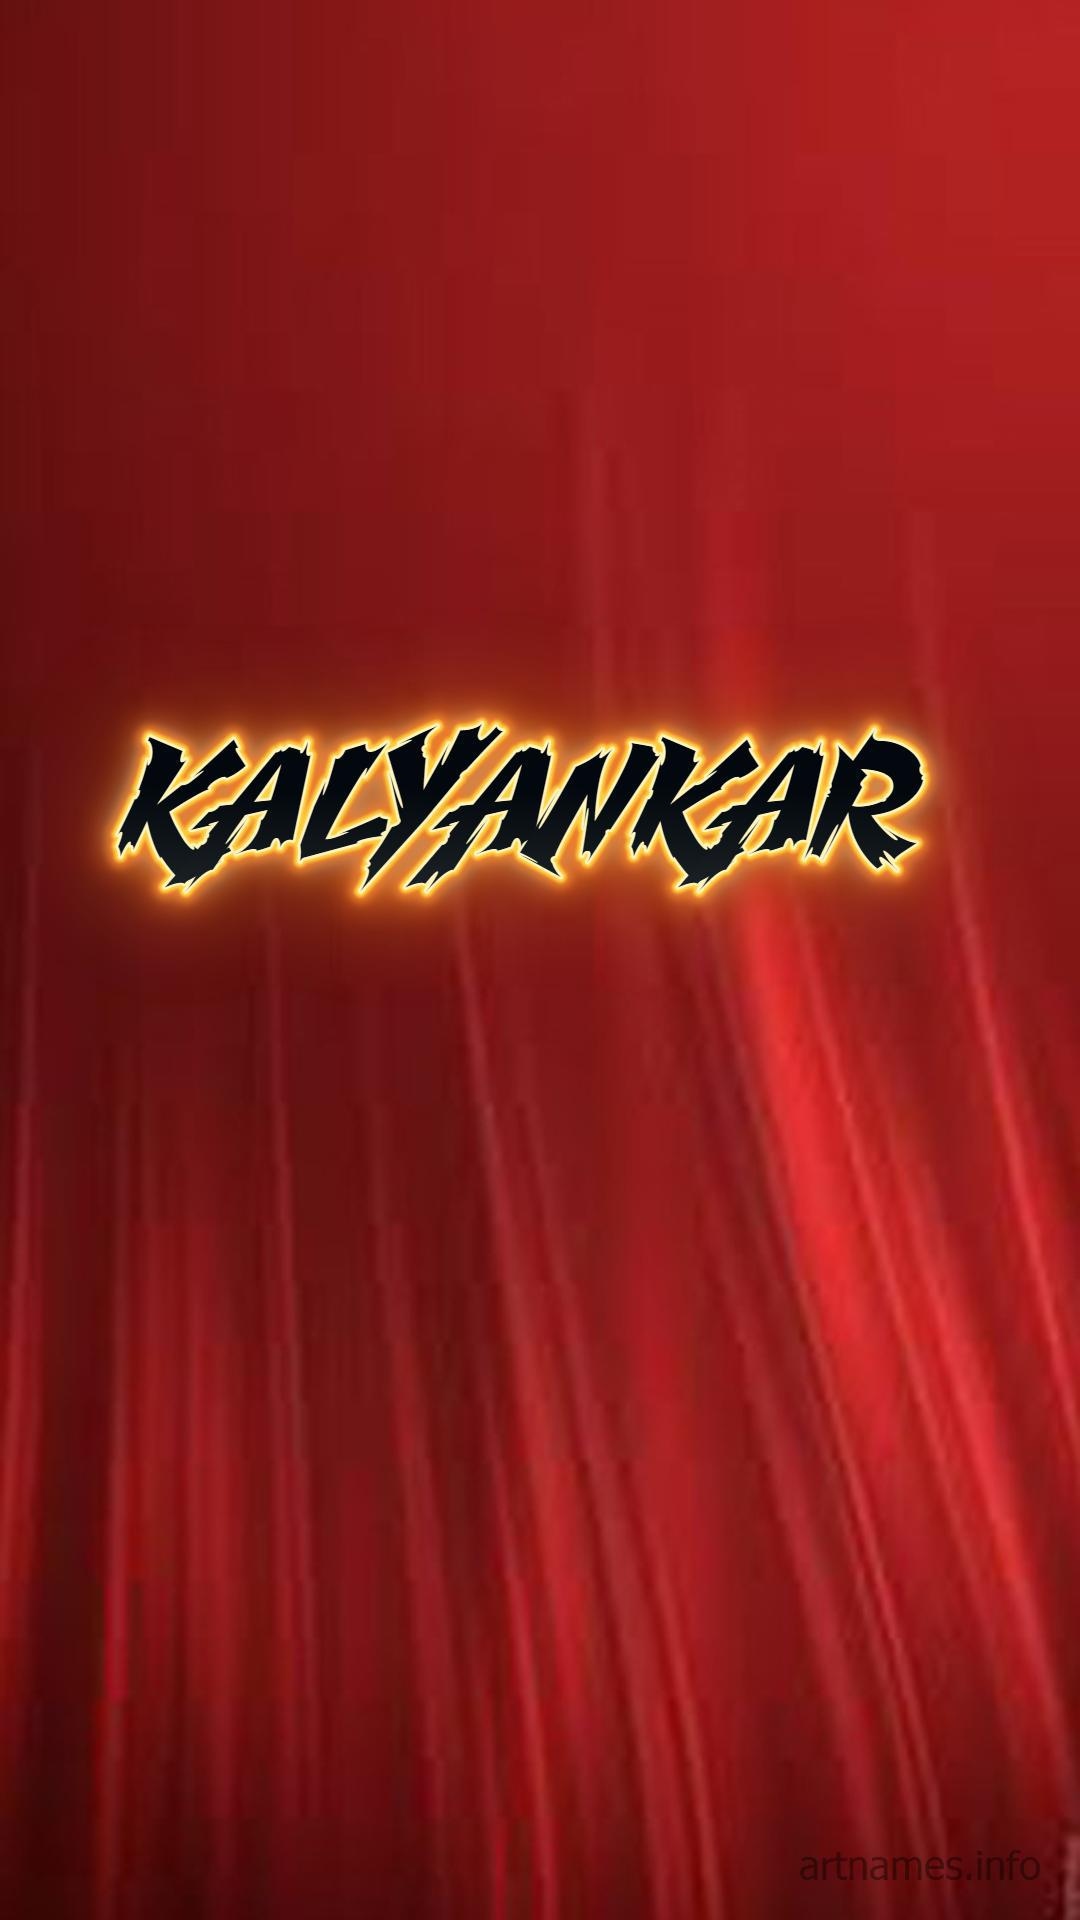 Name - Kalyankar